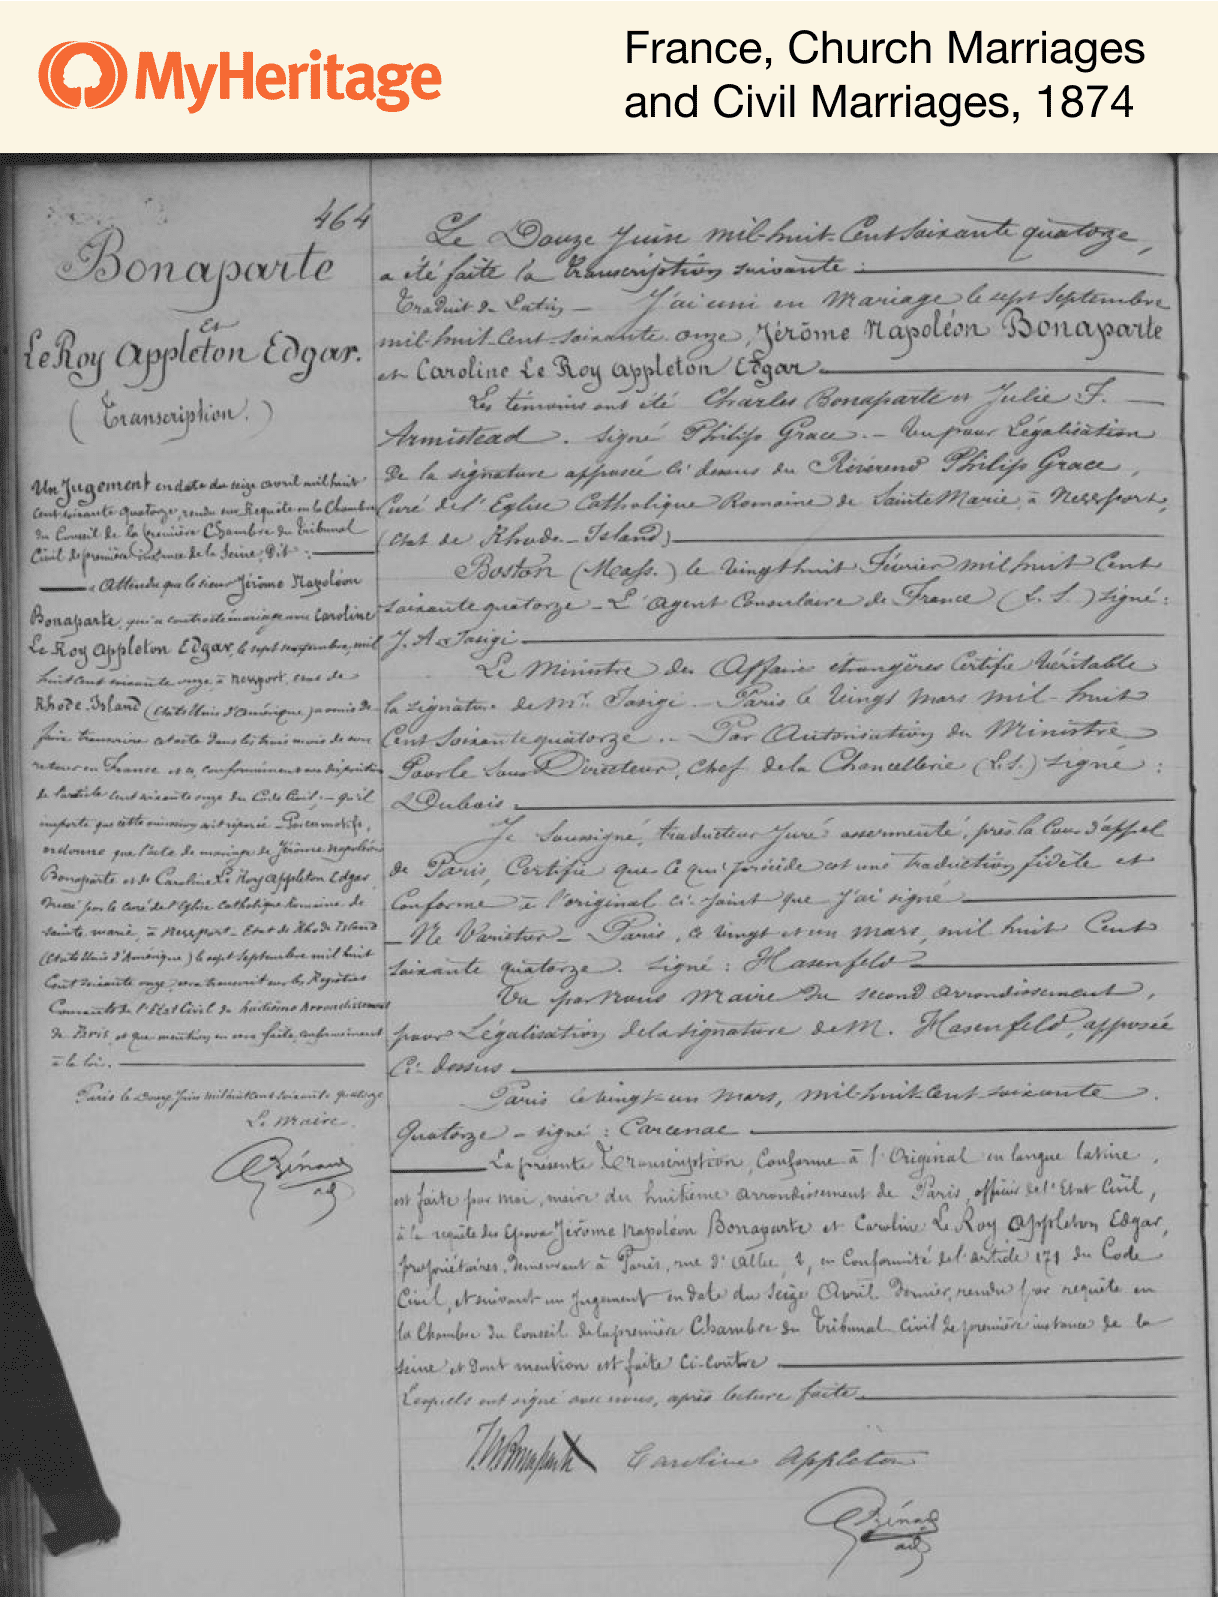 Französisches Dokument vom 12. Juni 1874, aus dem hervorgeht, dass die Ehe von Jerome Bonaparte und Caroline Appleton am 7. September 1871 in Newport, Rhode Island, geschlossen wurde.